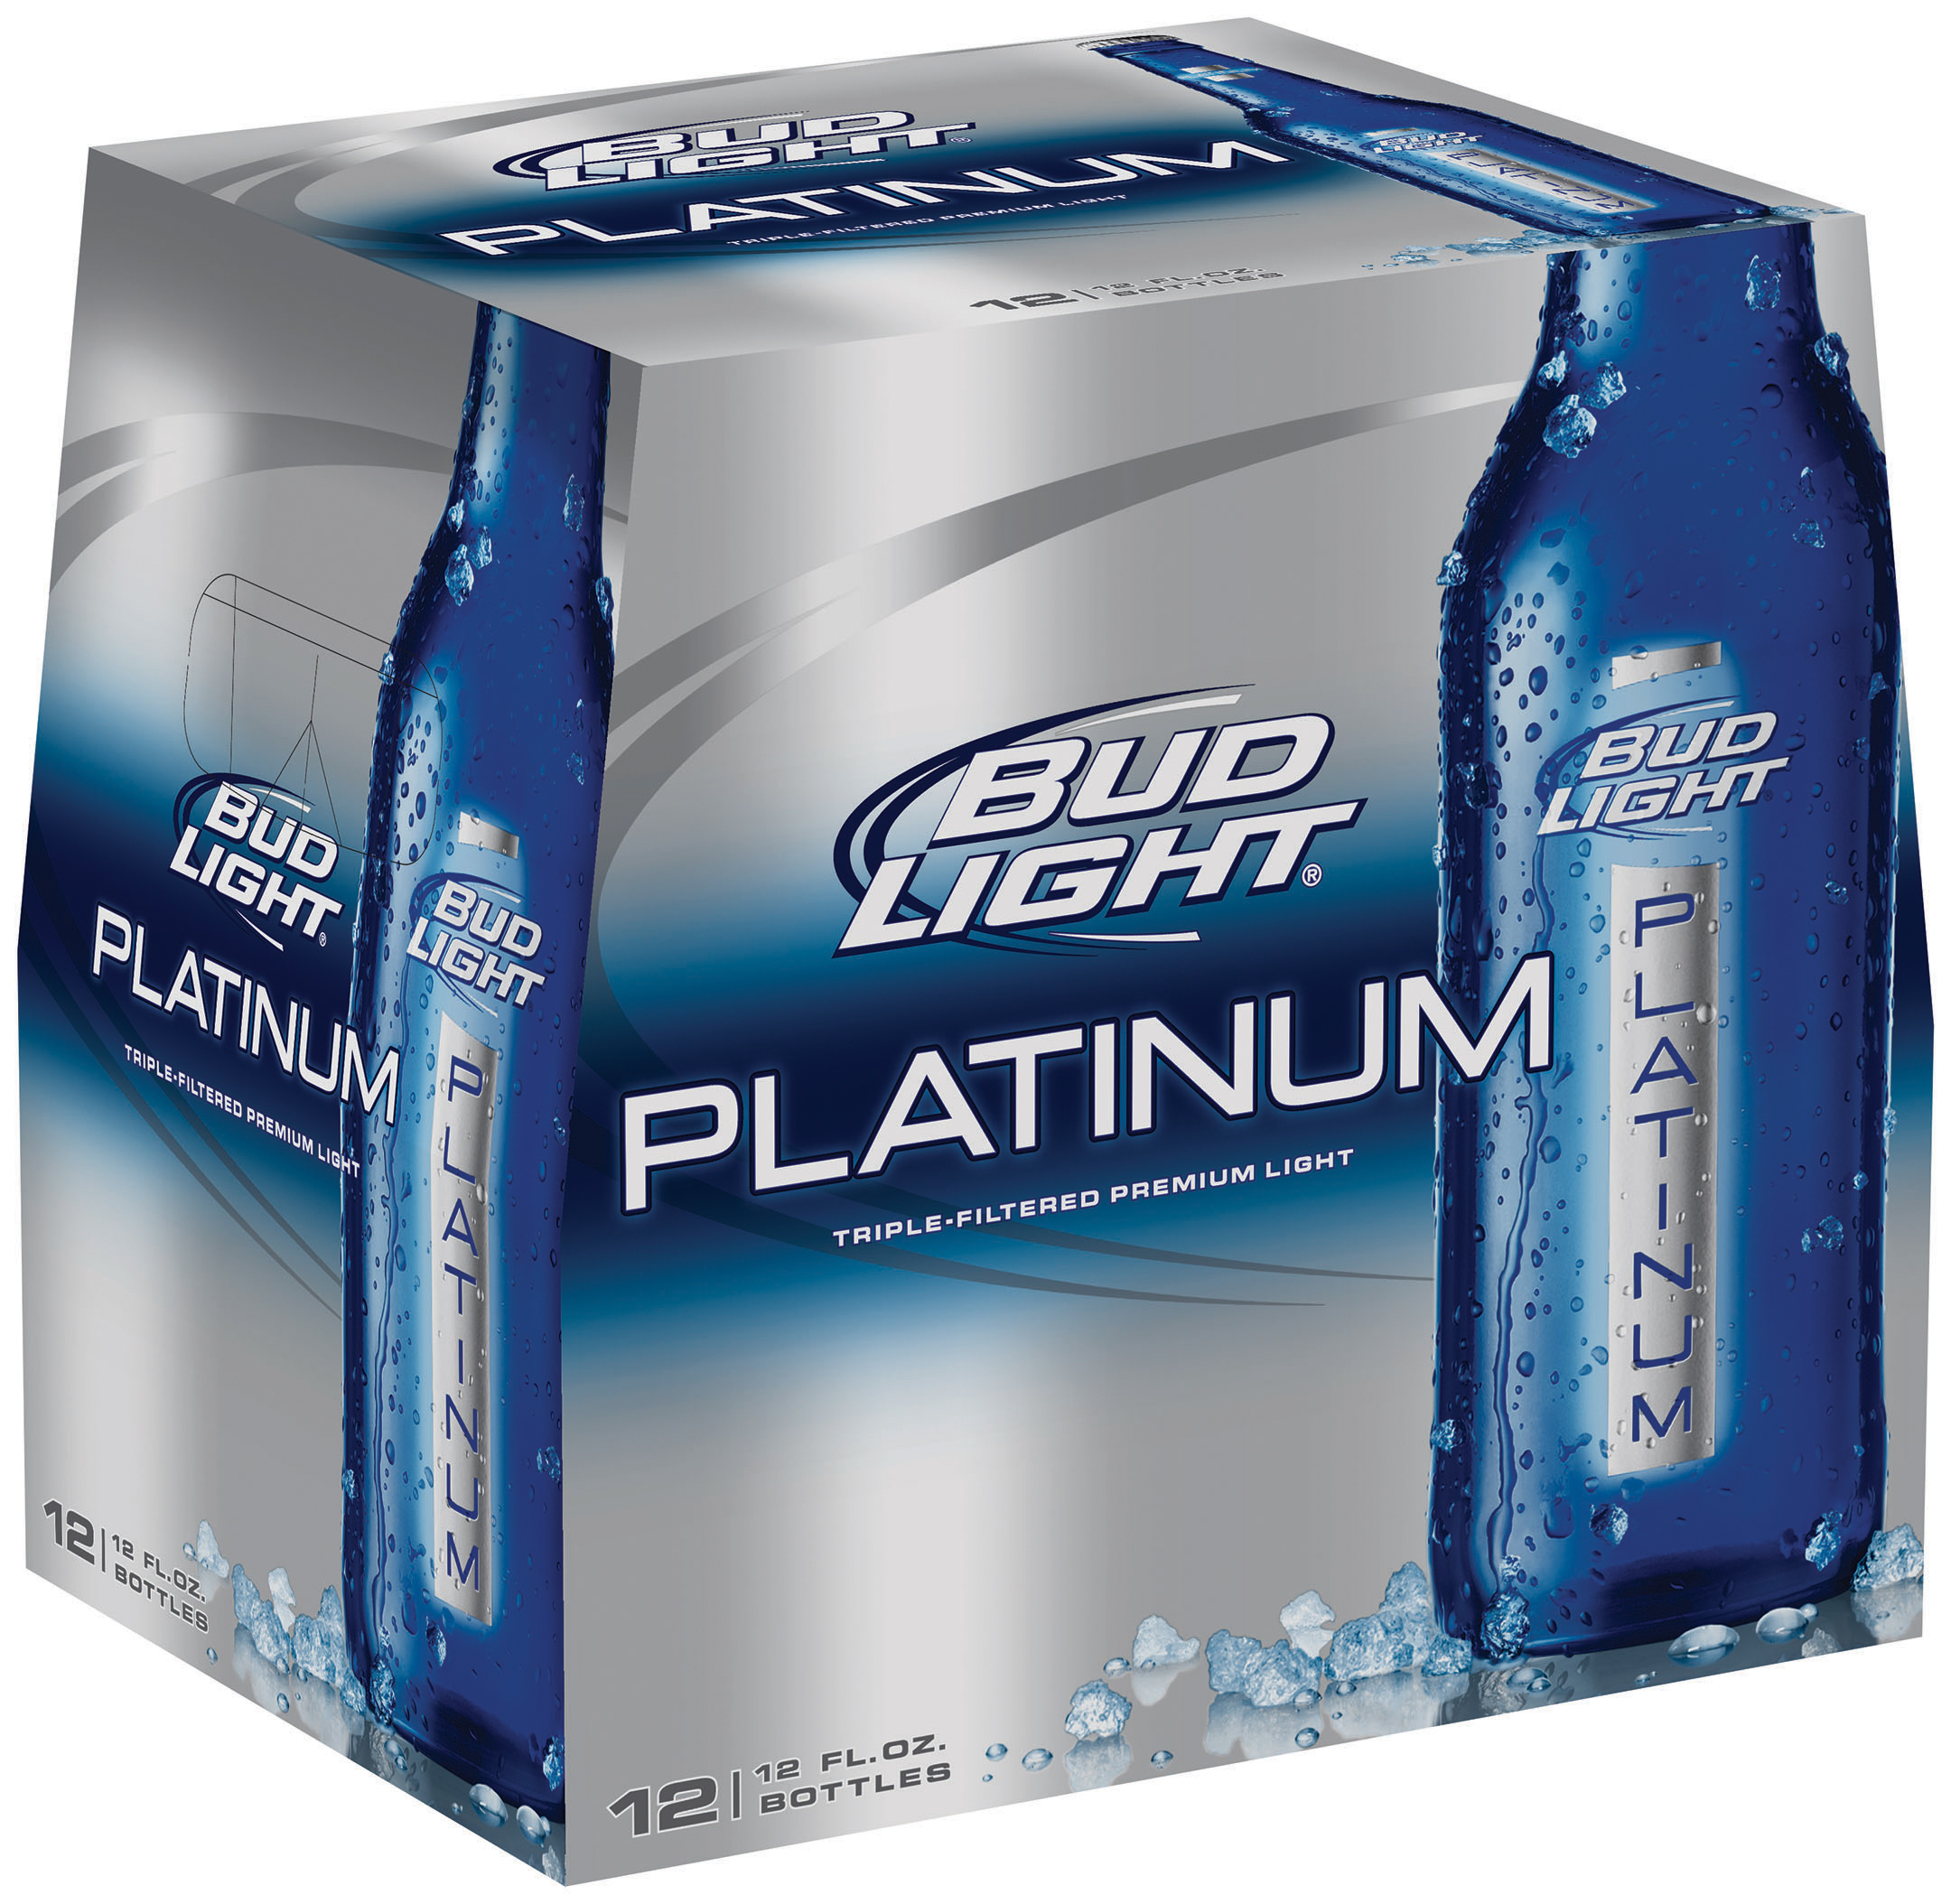 Bud Light Platinum Launches New Reclosable Aluminum Bottle in Las Vegas